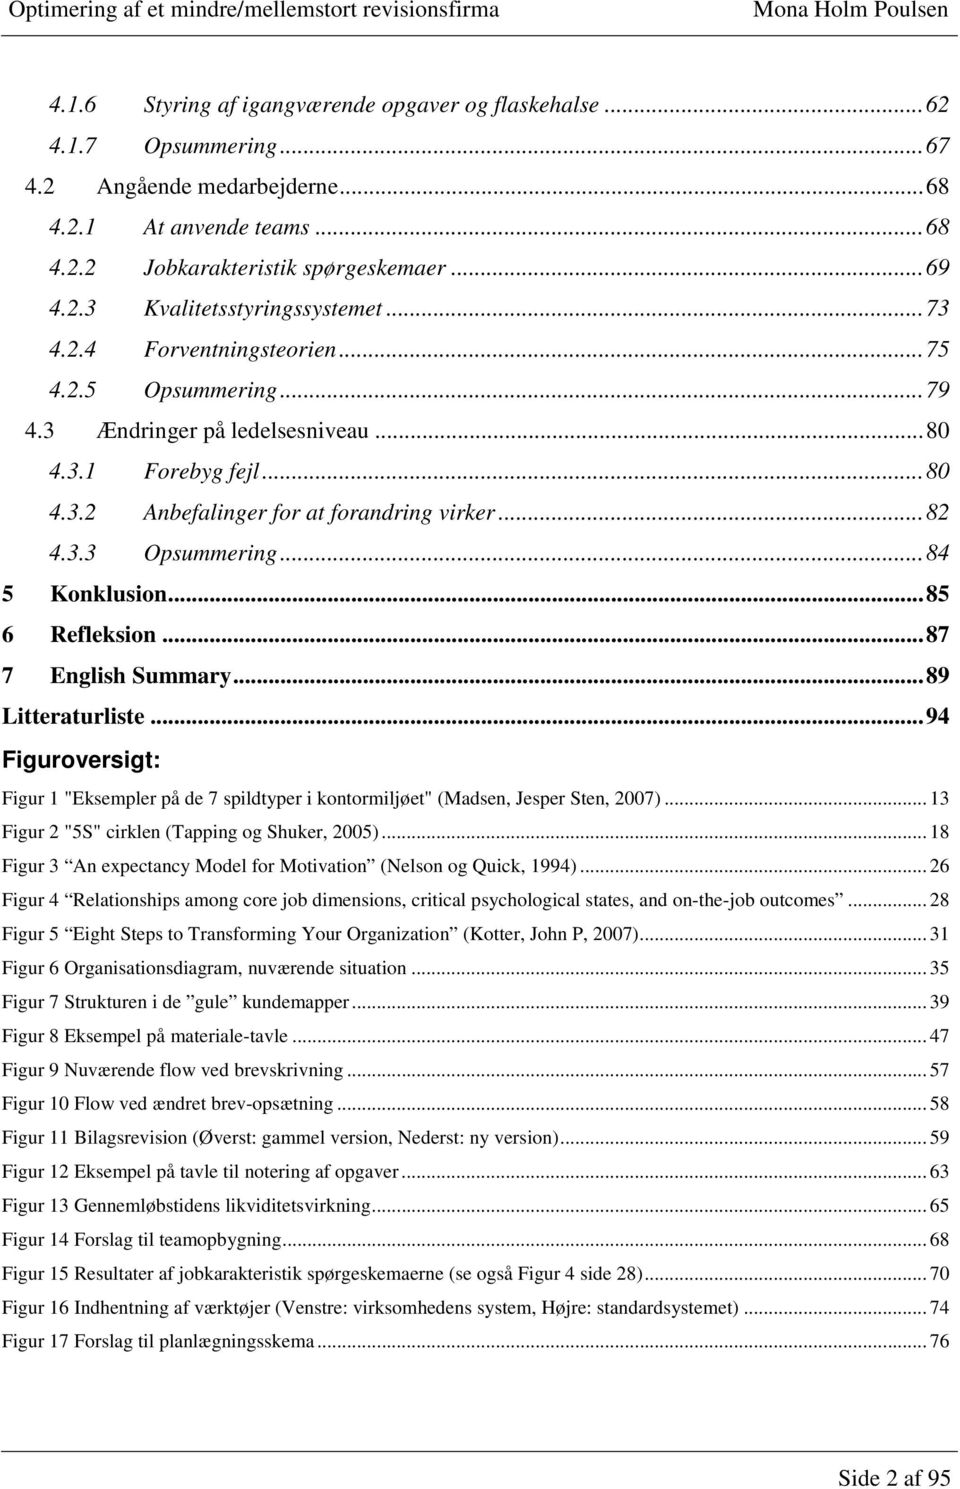 ..84 5 Konklusion...85 6 Refleksion...87 7 English Summary...89 Litteraturliste...94 Figuroversigt: Figur 1 "Eksempler på de 7 spildtyper i kontormiljøet" (Madsen, Jesper Sten, 2007).